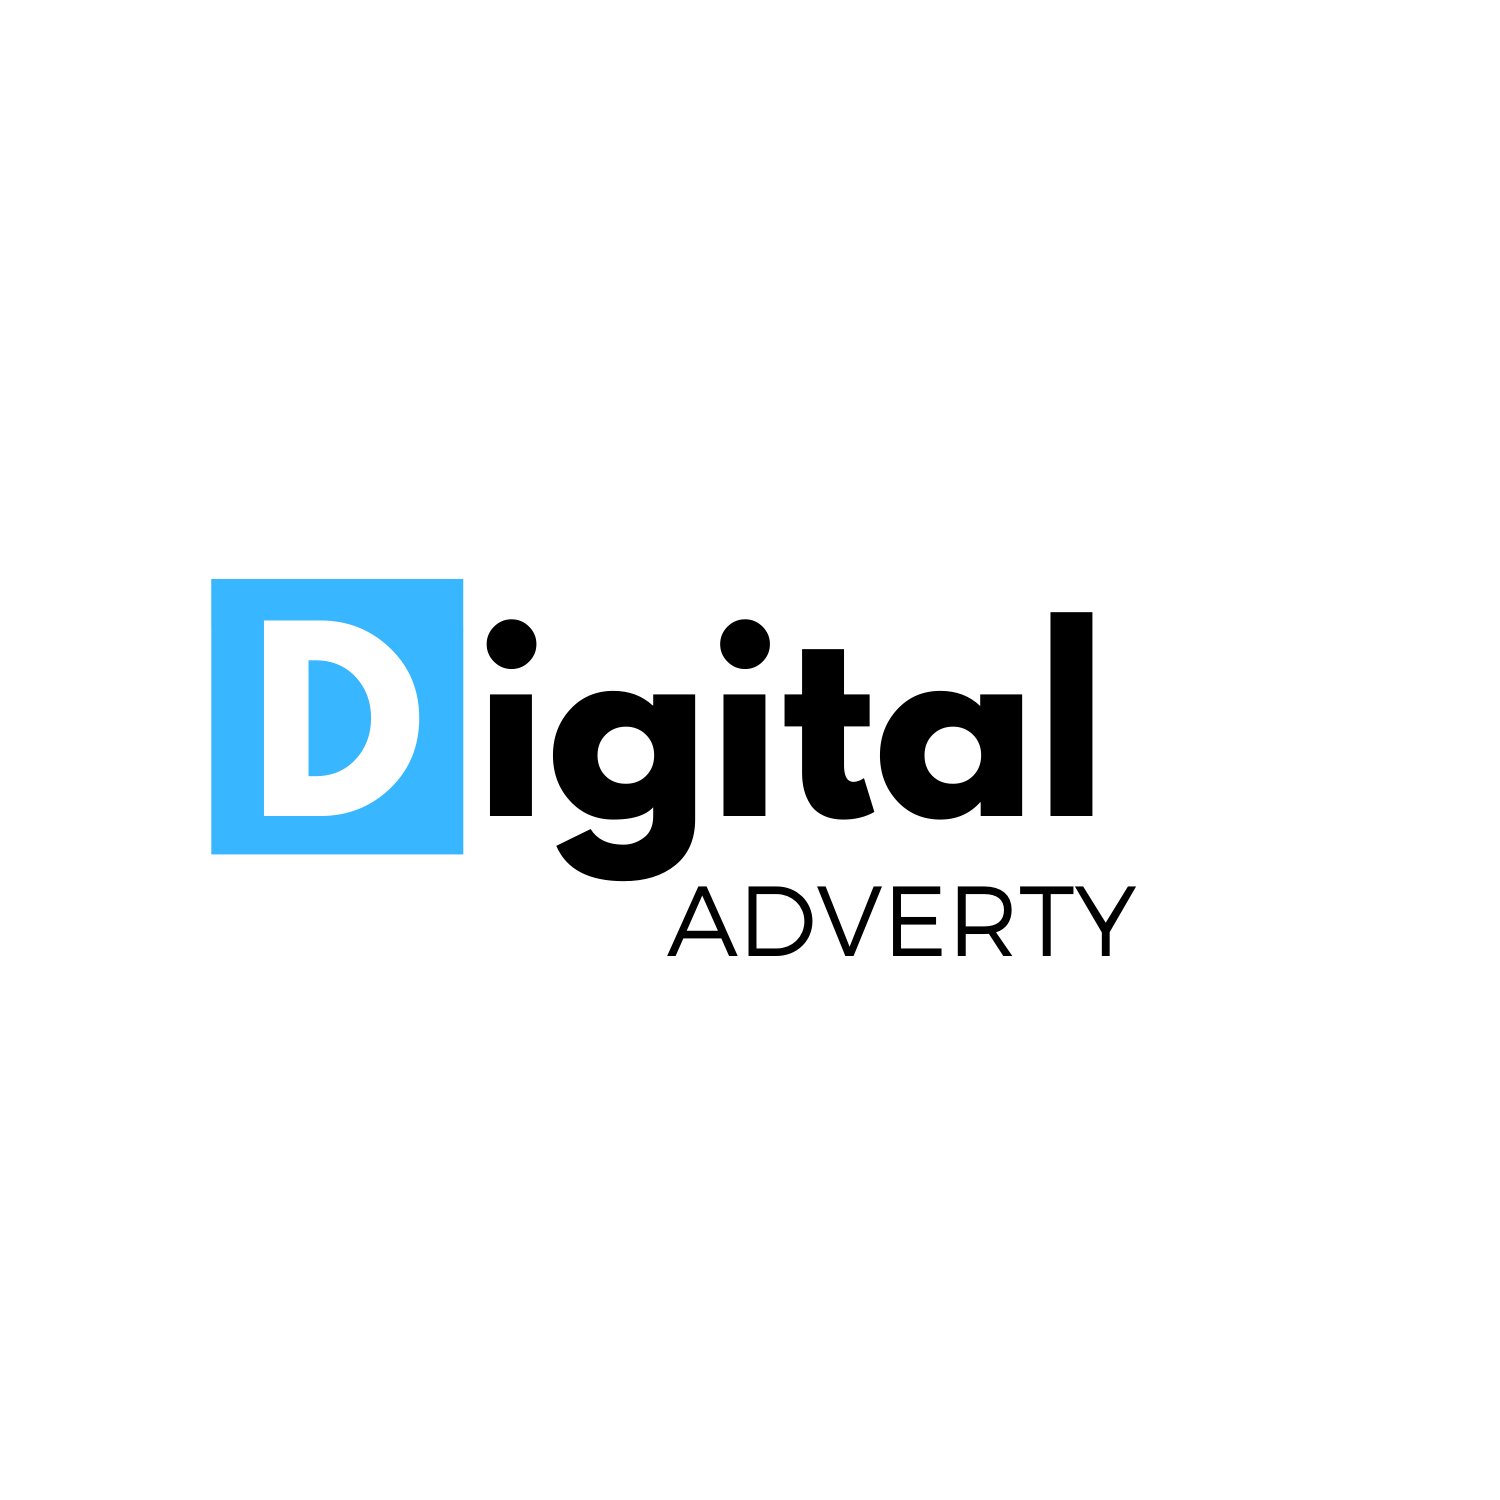 Digital Adverty - Helping You Succeed In Digital Marketing World